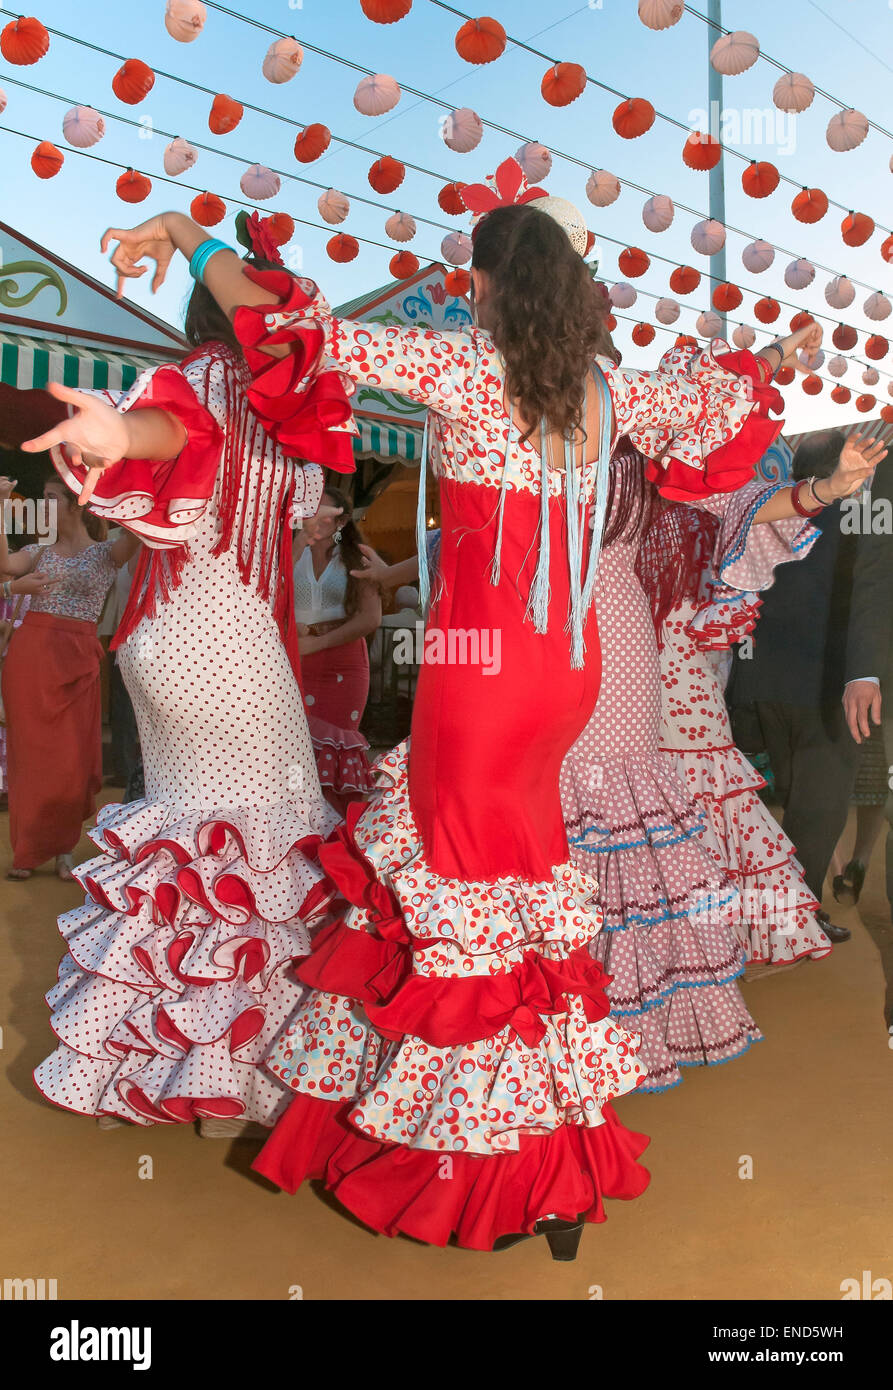 Foire d'avril, les jeunes femmes danse avec la traditionnelle robe flamenco, Séville, Andalousie, Espagne, Europe Banque D'Images